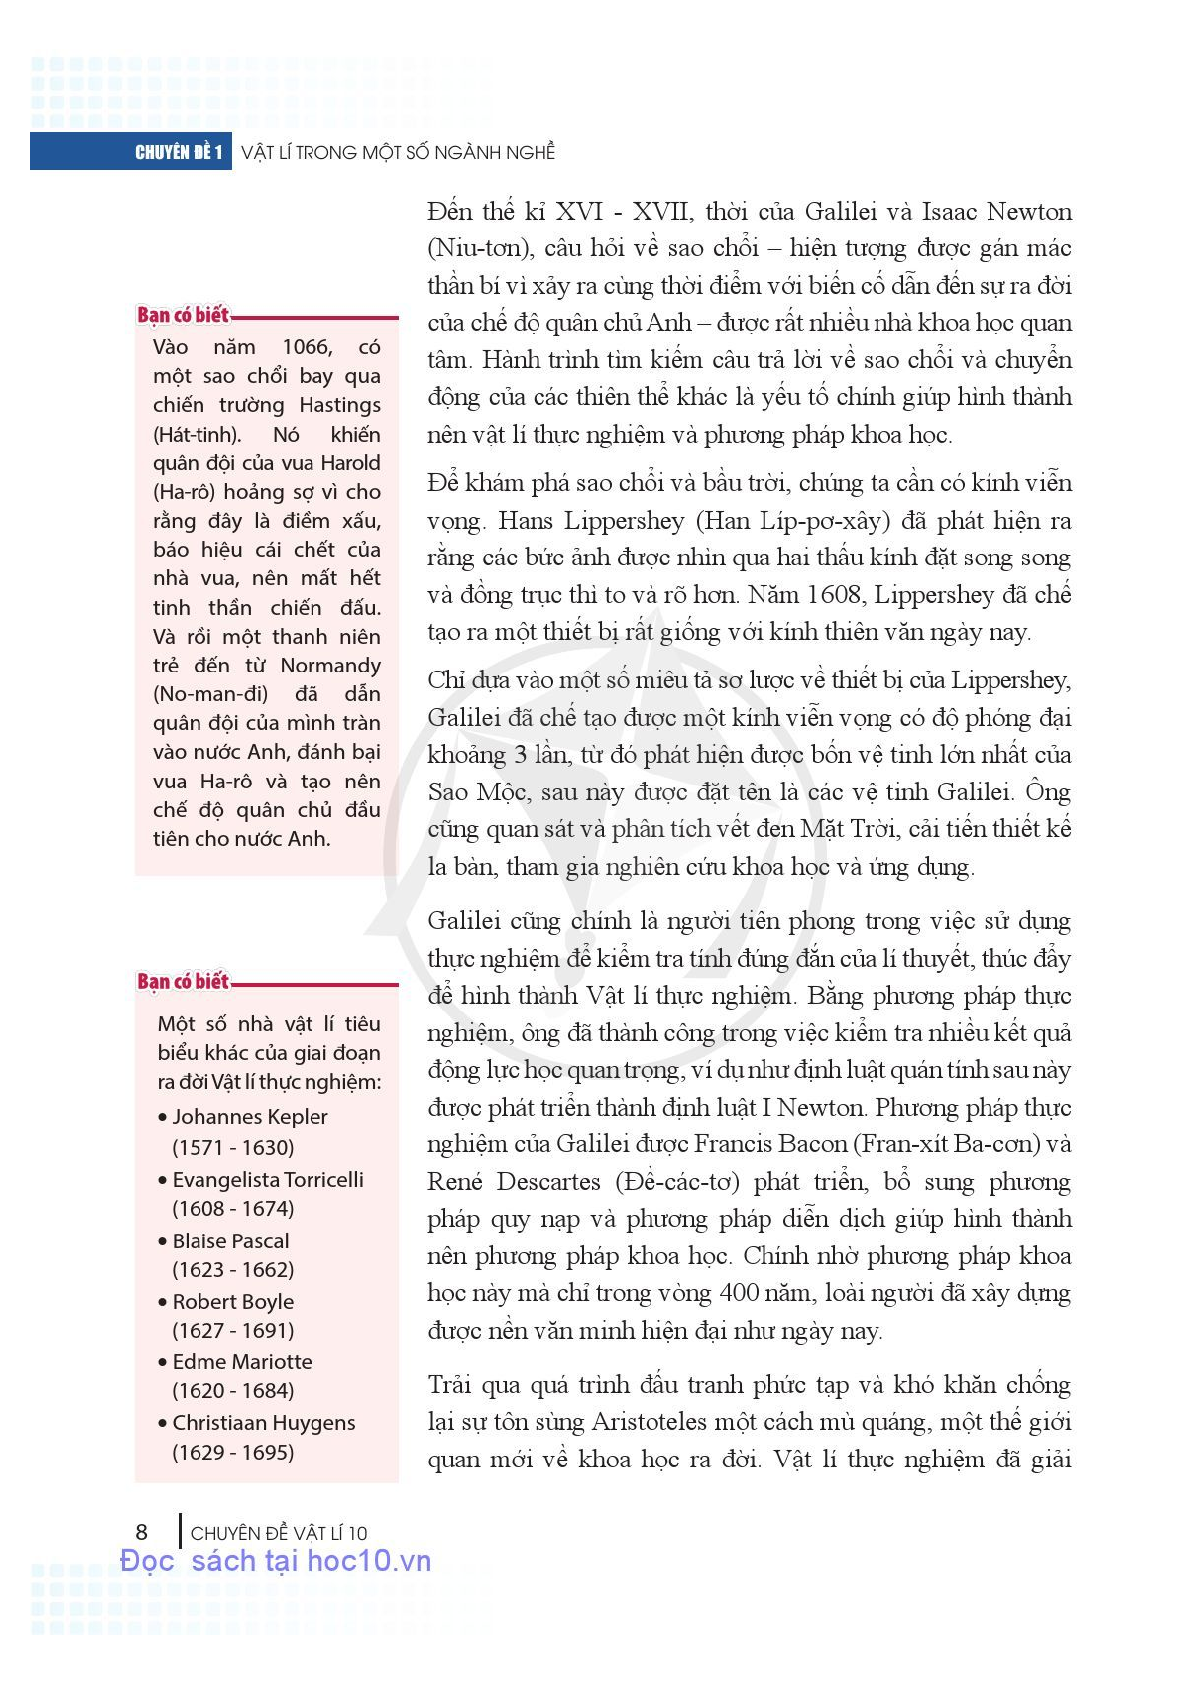 Chuyên đề học tập Vật lí 10 Cánh diều pdf (trang 9)